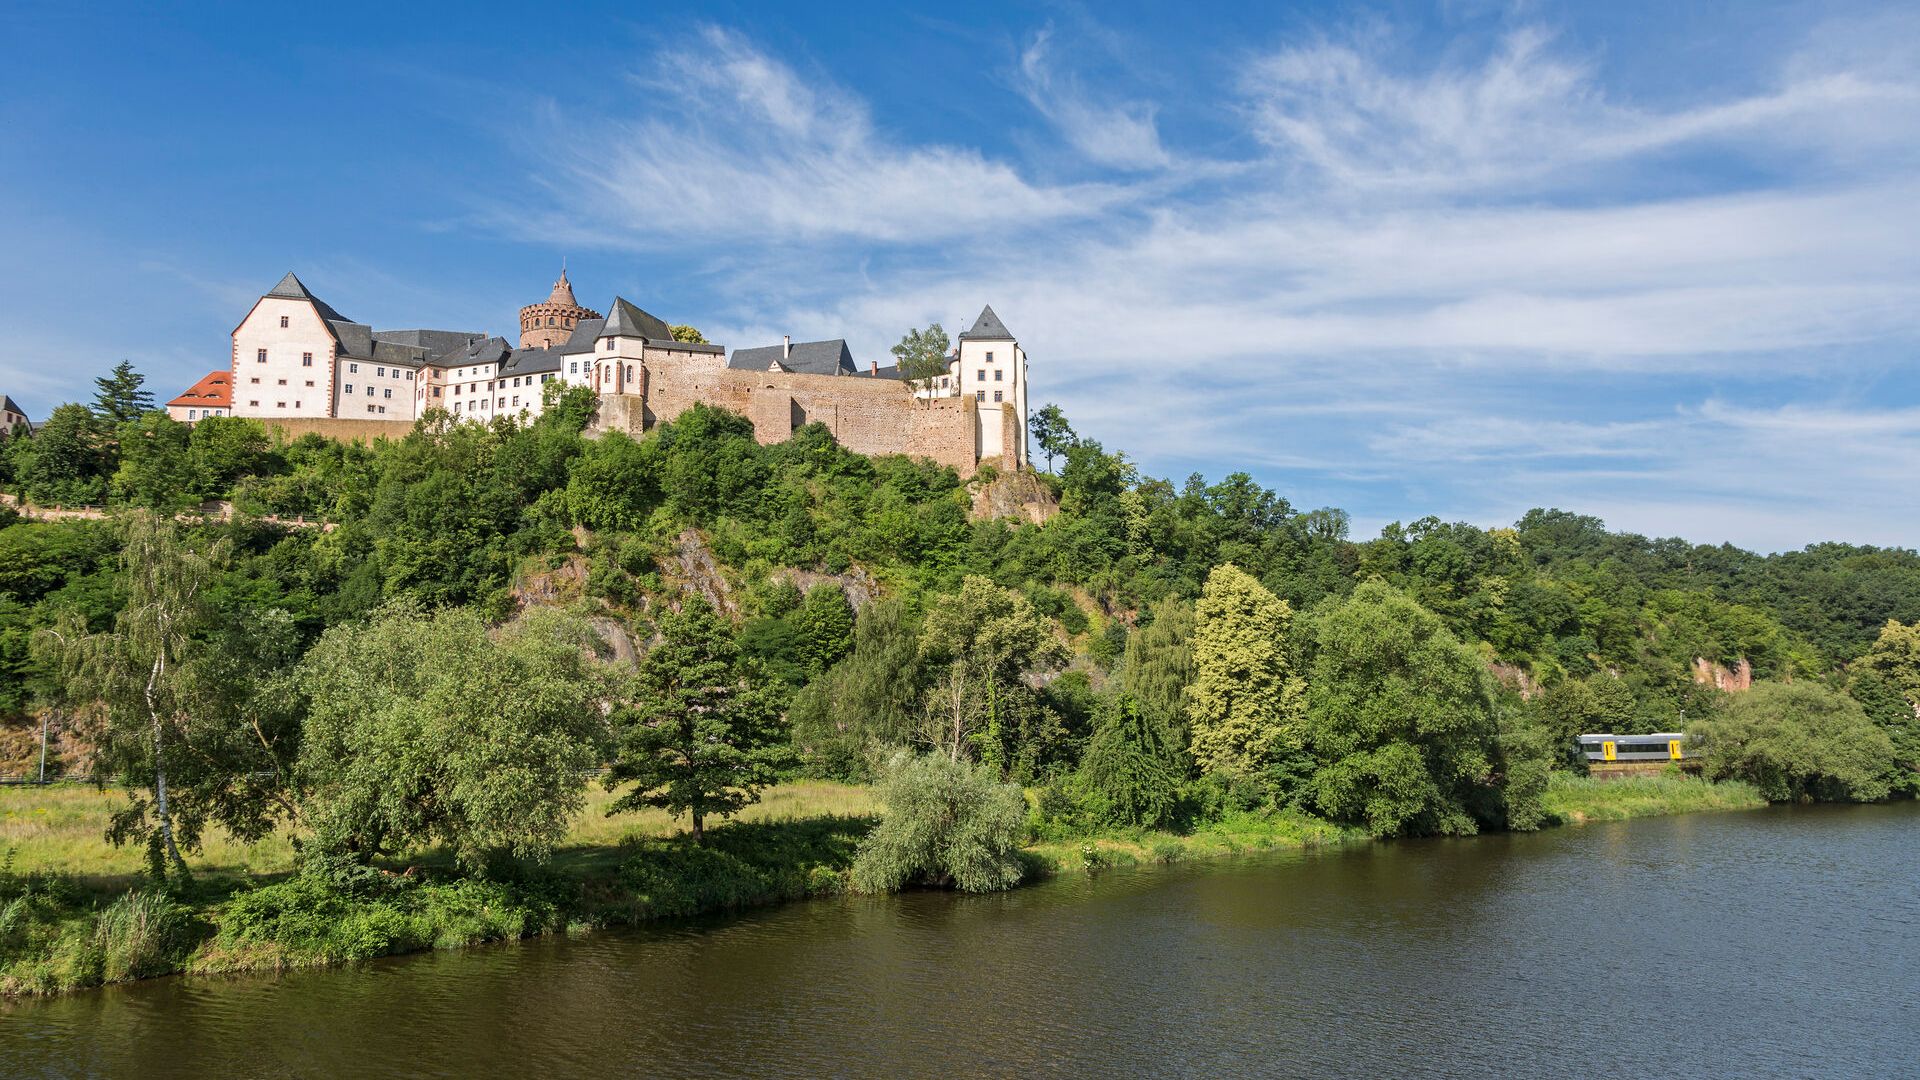 Die malerische Burg Mildenstein am Ufer der Mulde in Leisnig.